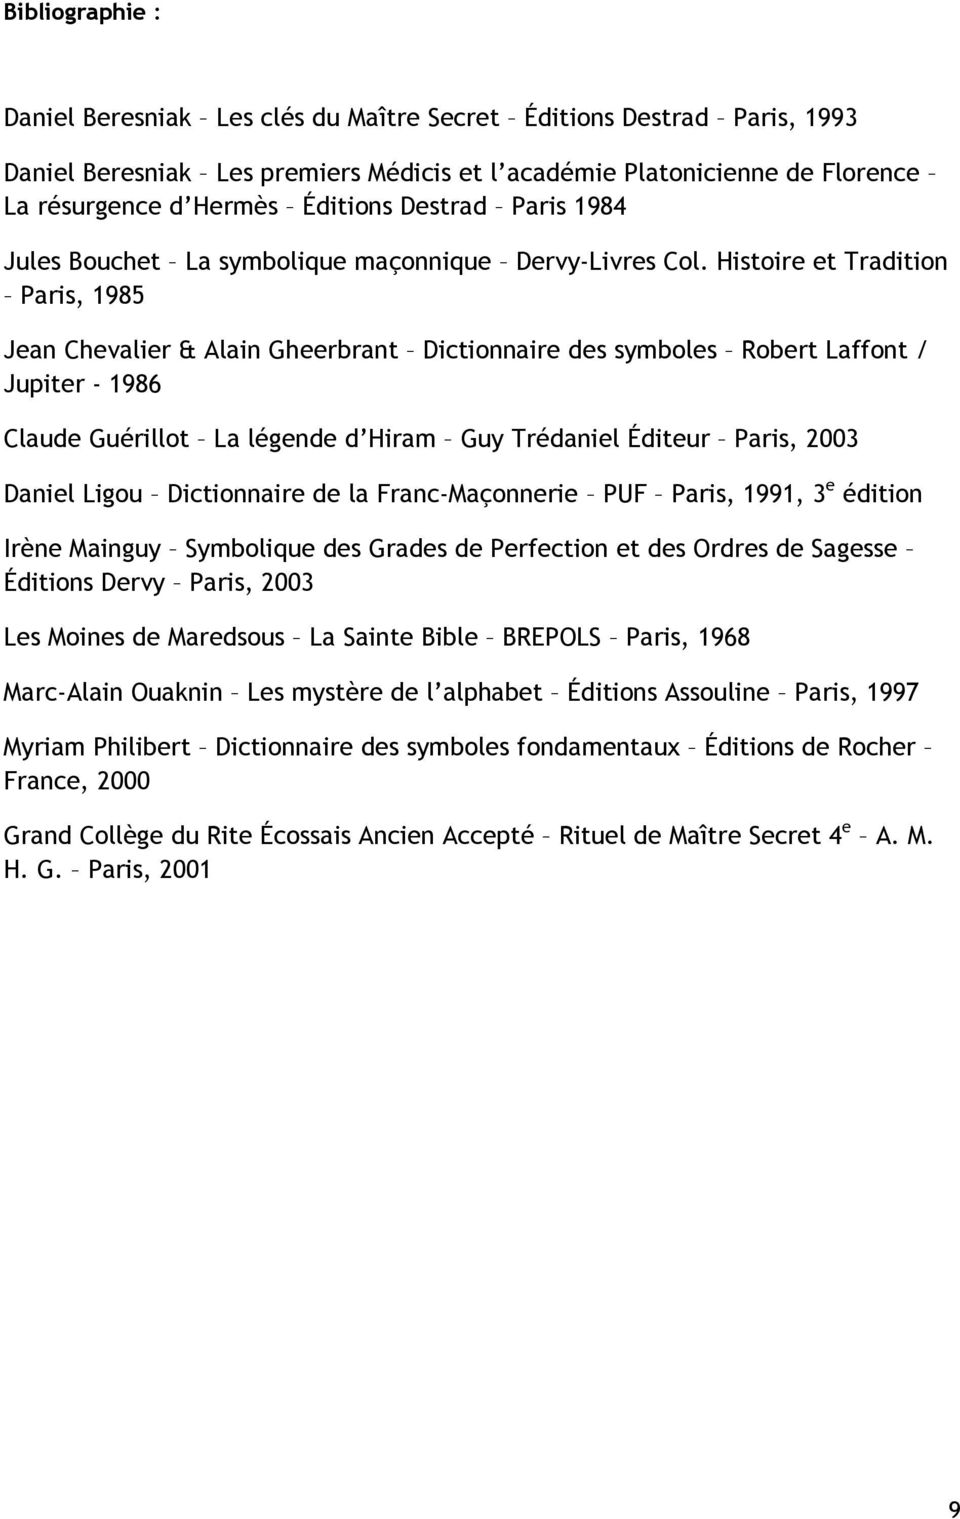 Histoire et Tradition Paris, 1985 Jean Chevalier & Alain Gheerbrant Dictionnaire des symboles Robert Laffont / Jupiter - 1986 Claude Guérillot La légende d Hiram Guy Trédaniel Éditeur Paris, 2003